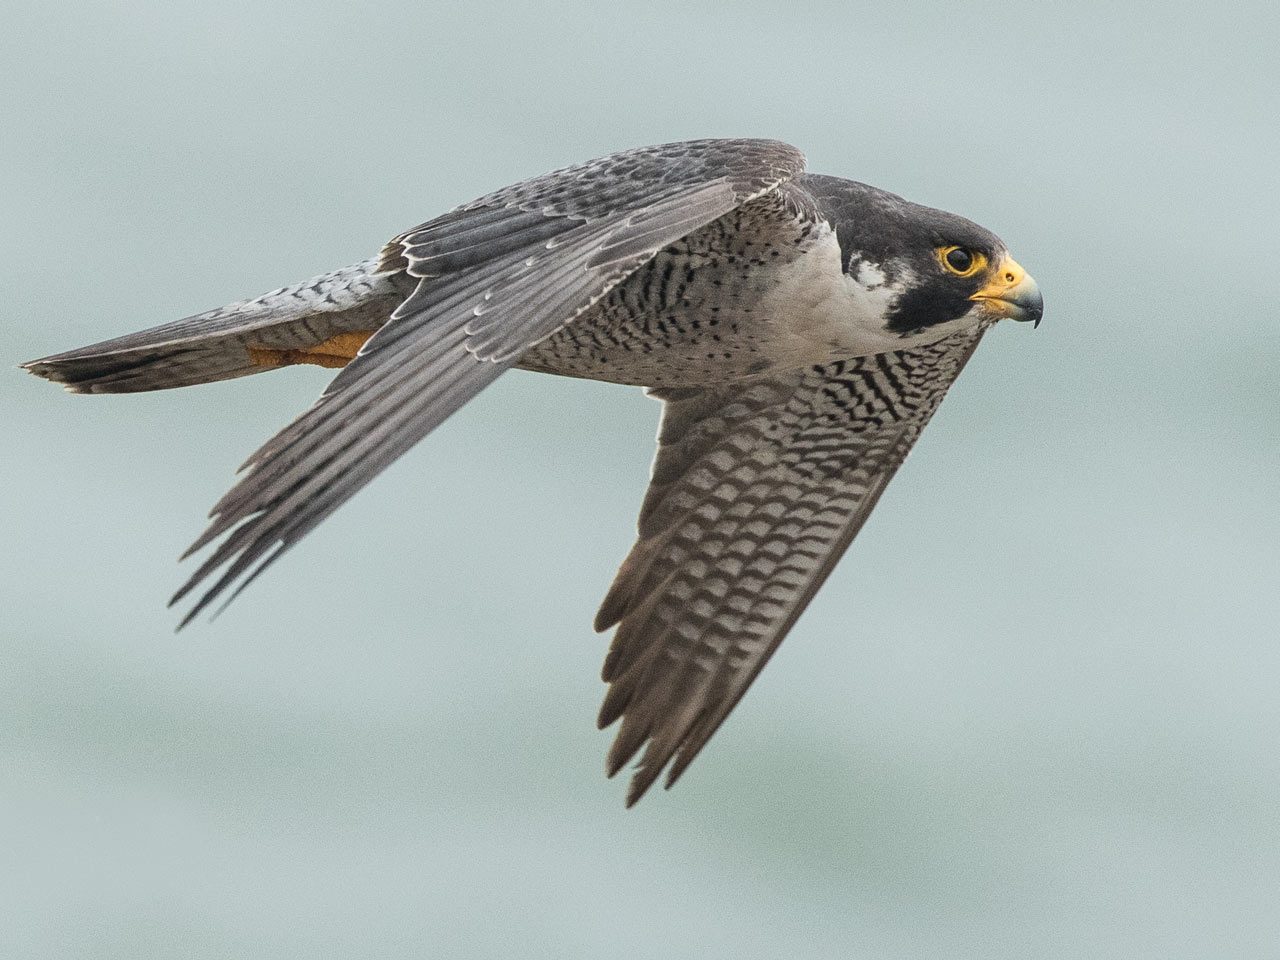 Peregrine Falcon in level flight